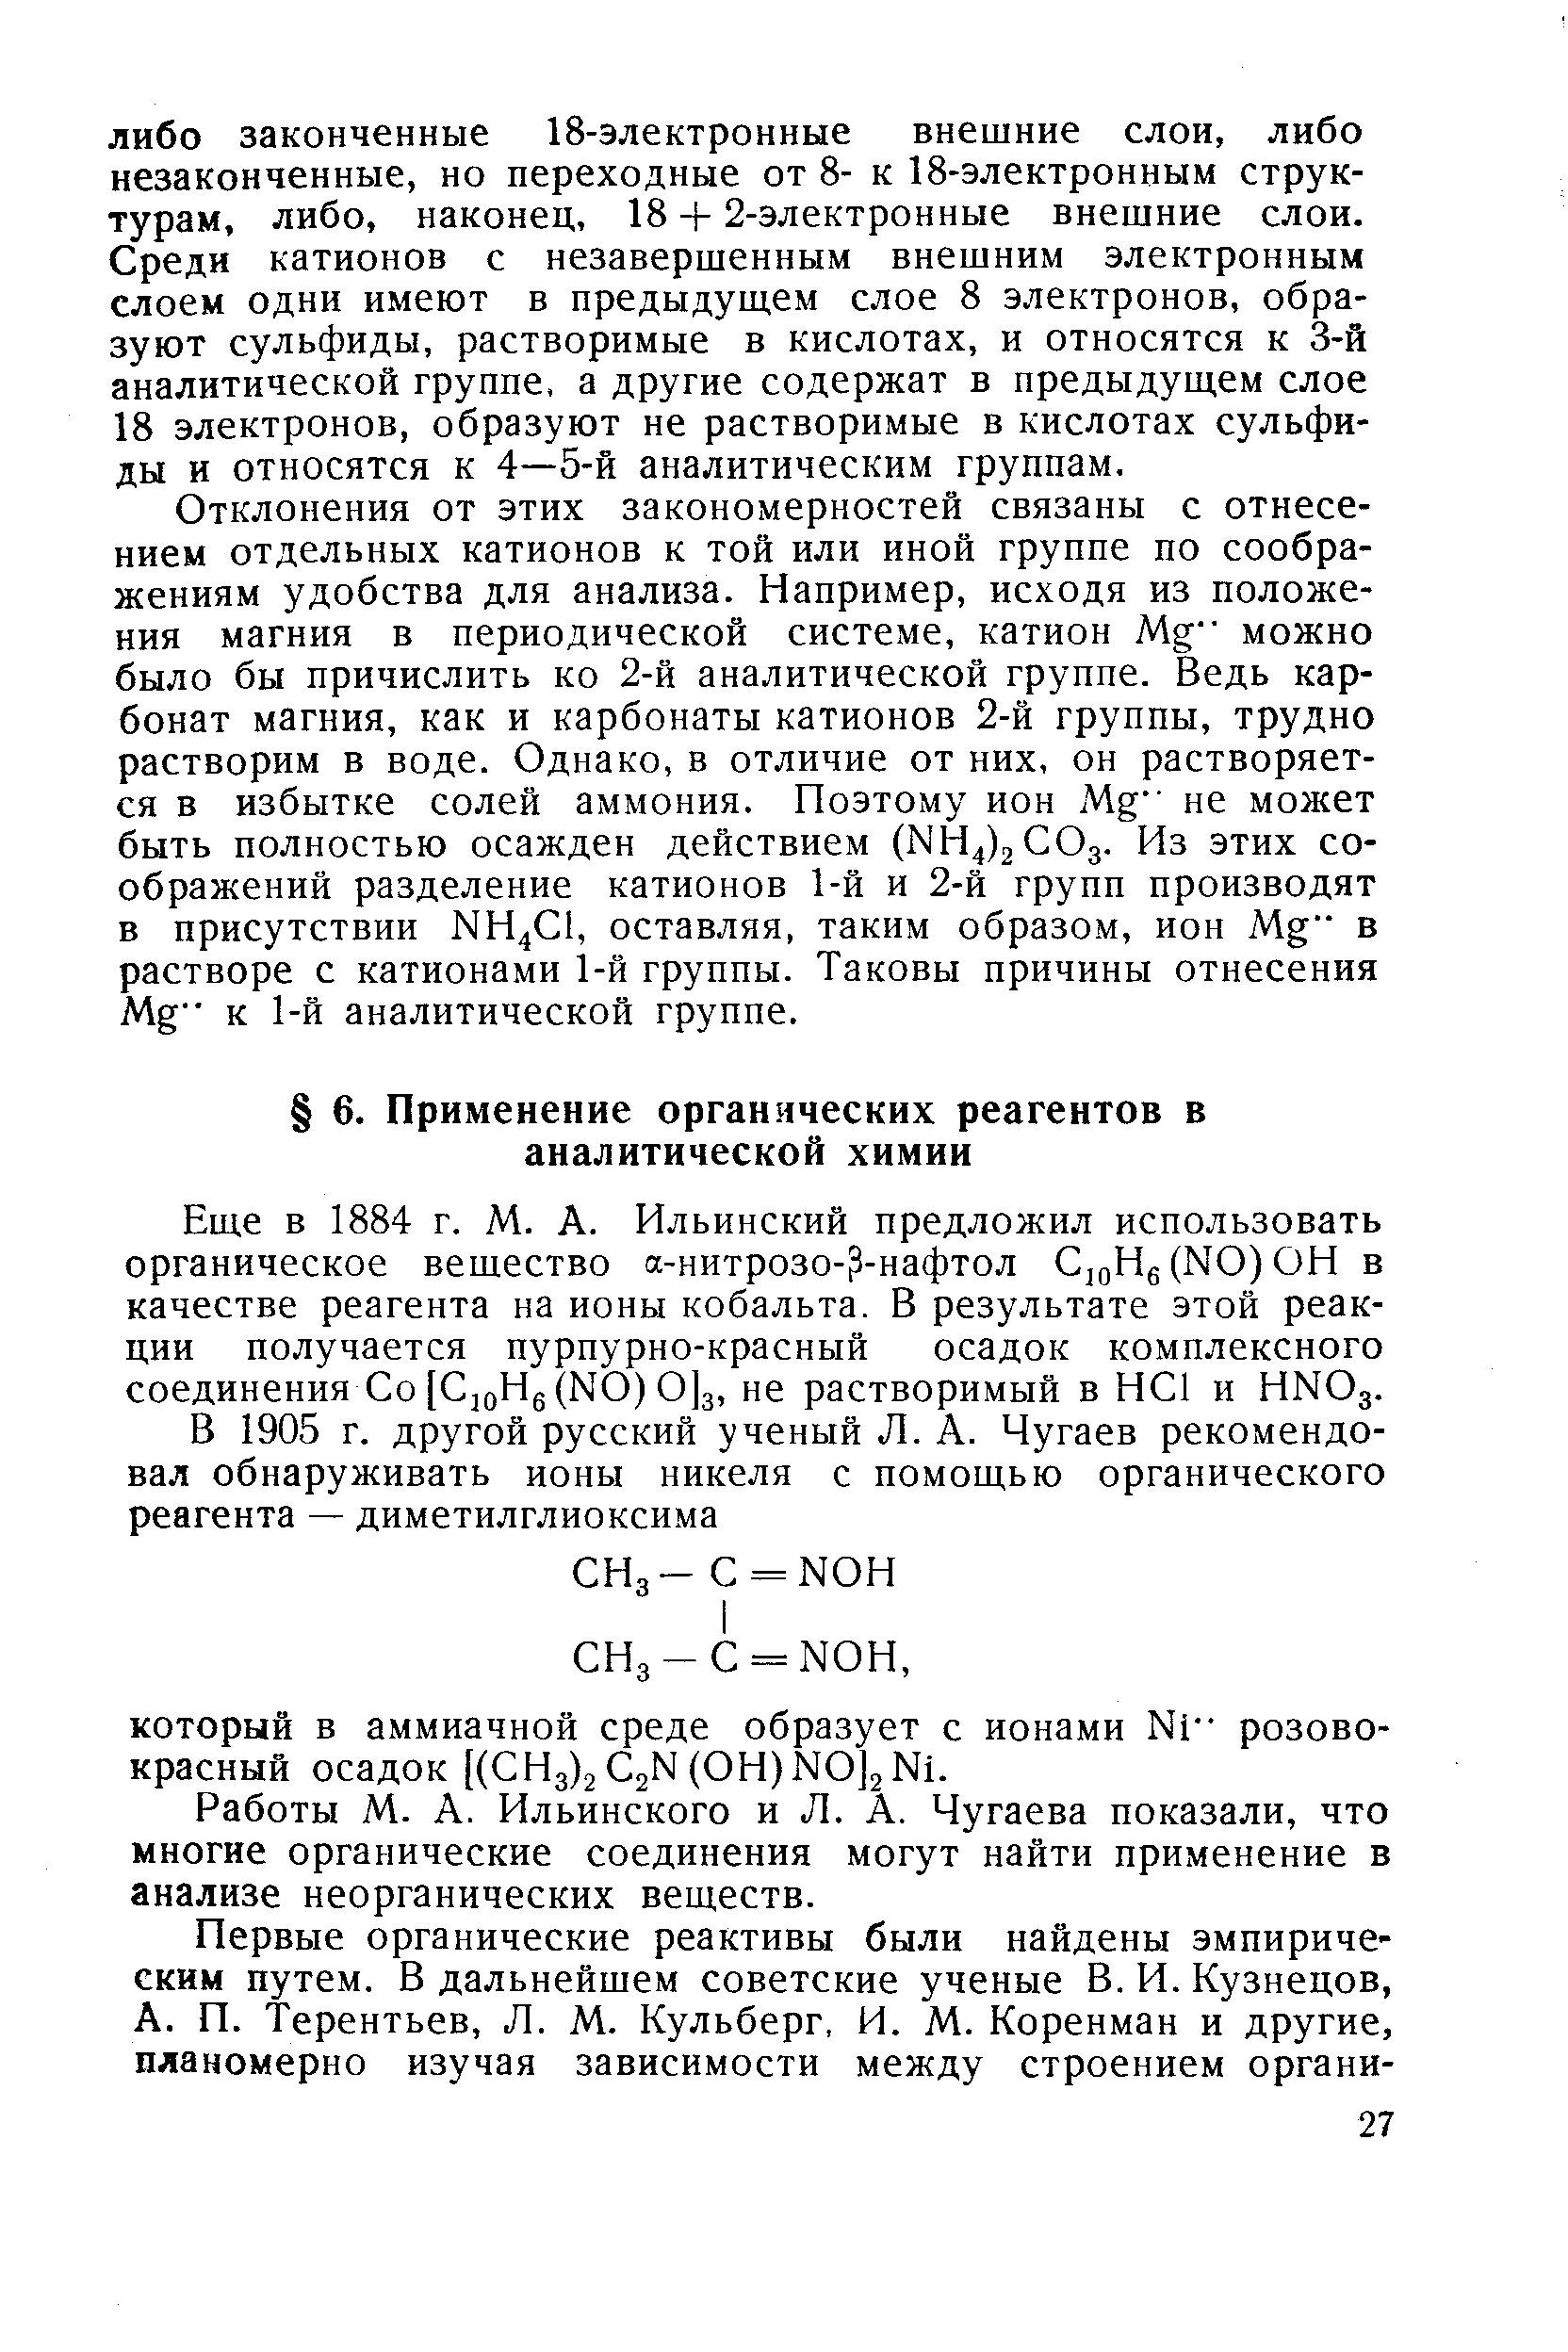 Еще в 1884 г. М. А. Ильинский предложил использовать органическое вещество а-нитрозо- -нафтол С,оНб(ЫО)ОН в качестве реагента на ионы кобальта. В результате этой реакции получается пурпурно-красный осадок комплексного соединения Со [СдоНе(КО) 0]з, не растворимый в НС1 и НМОд.